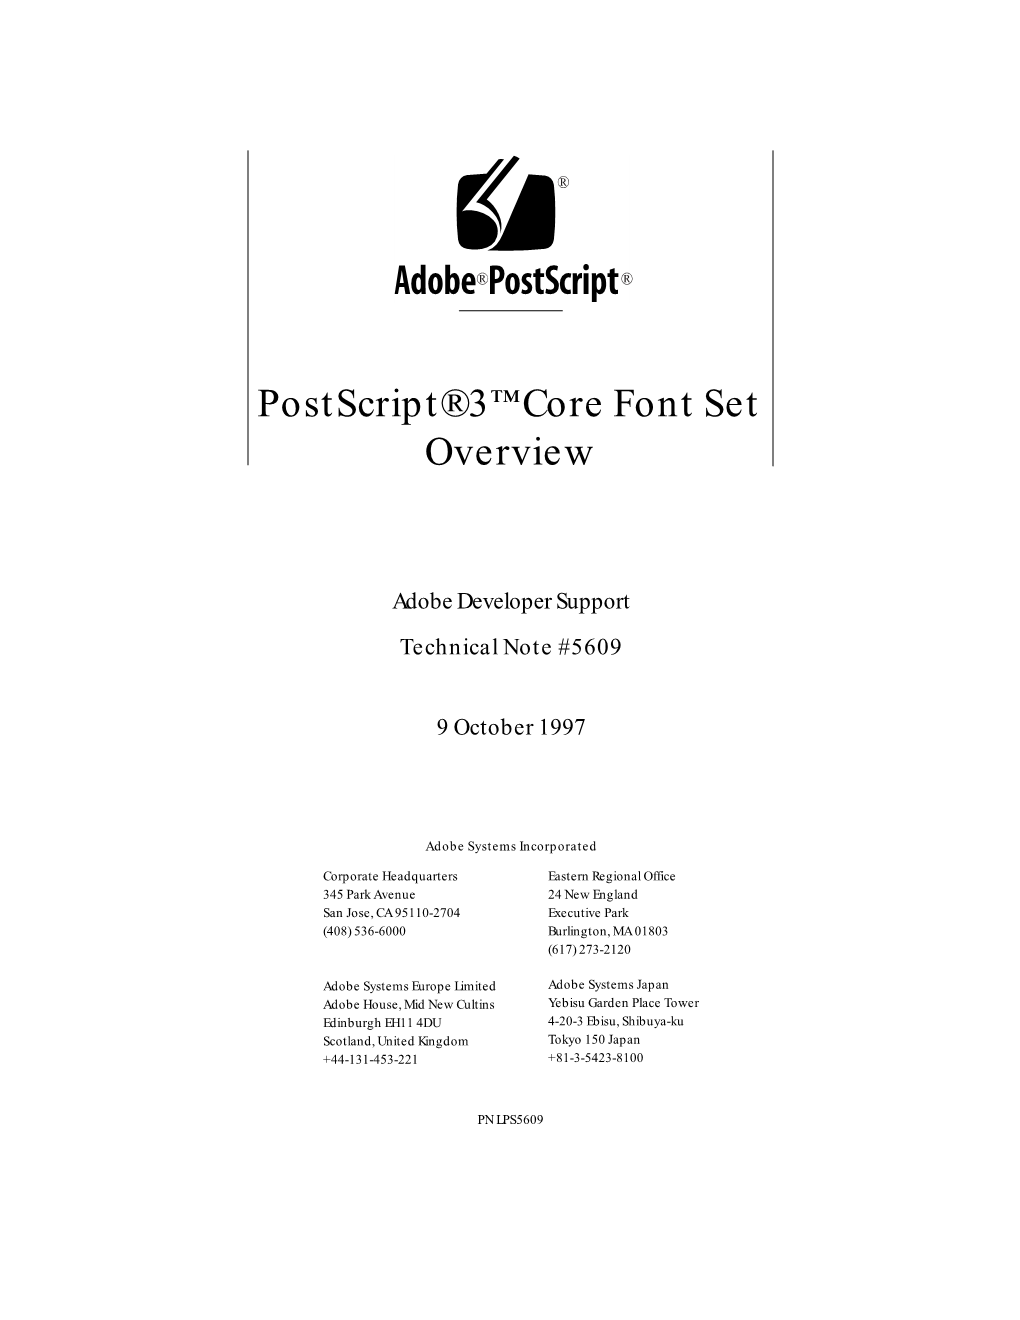 Postscript 3 Core Font Set Overview